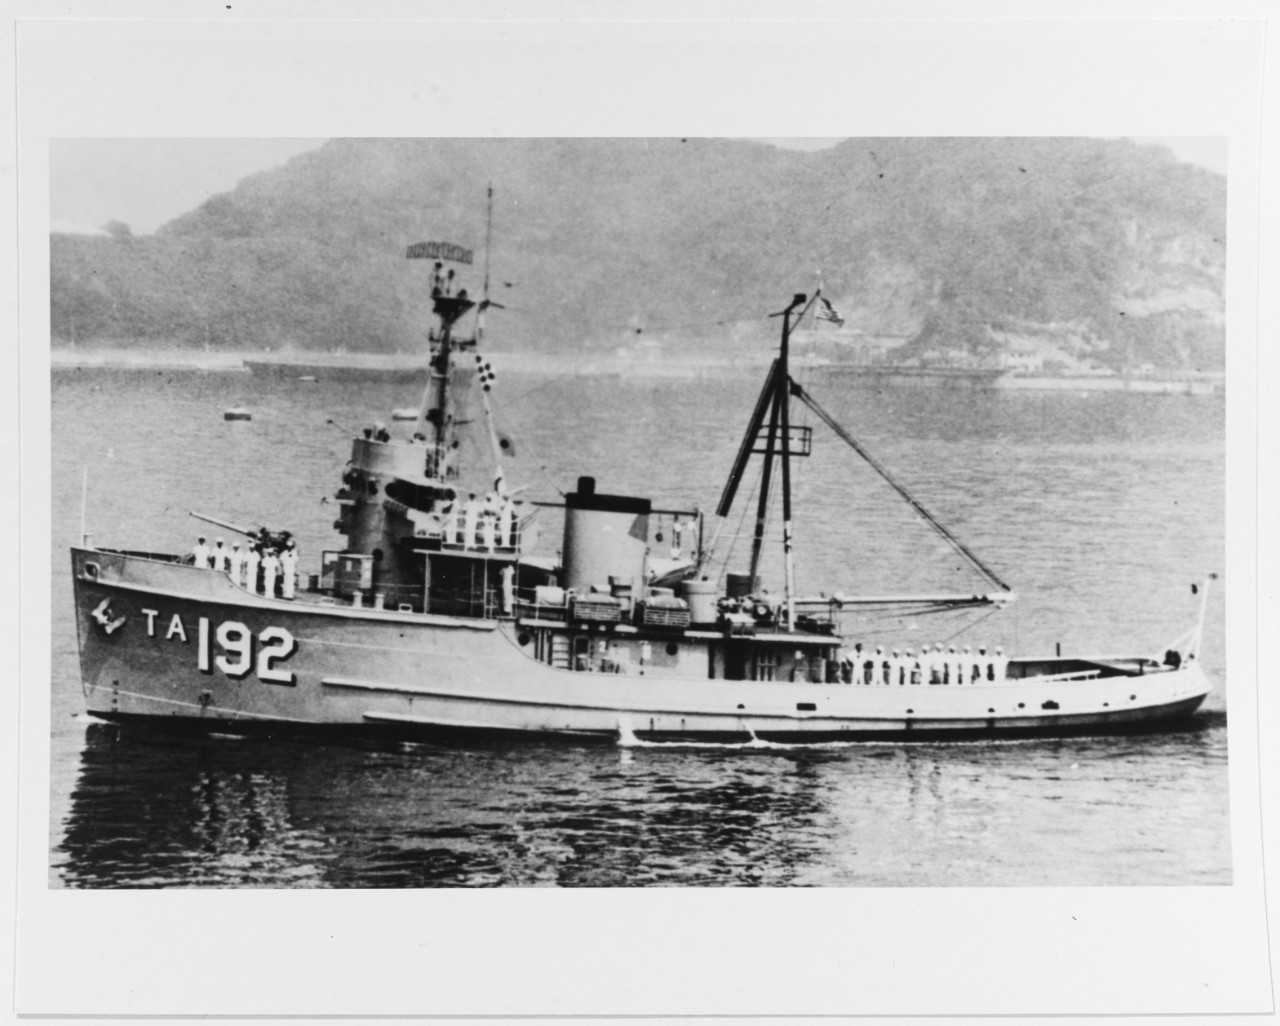 USS TILLAMOOK (ATA-192)